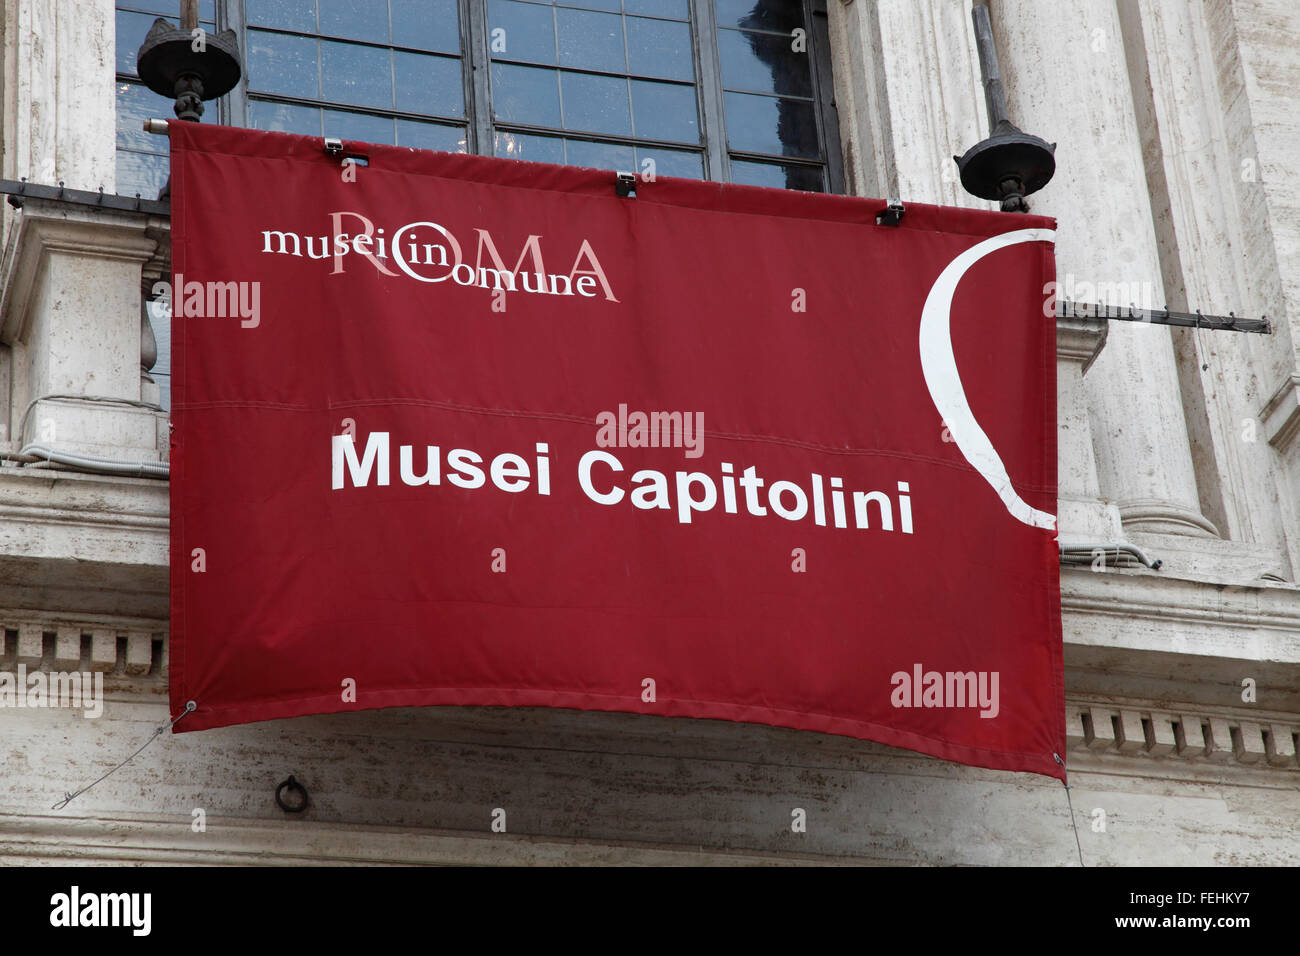 Les musées du Capitole (Musei Capitolini) sur la Piazza del Campidoglio, le haut de la colline du Capitole à Rome, Italie Banque D'Images